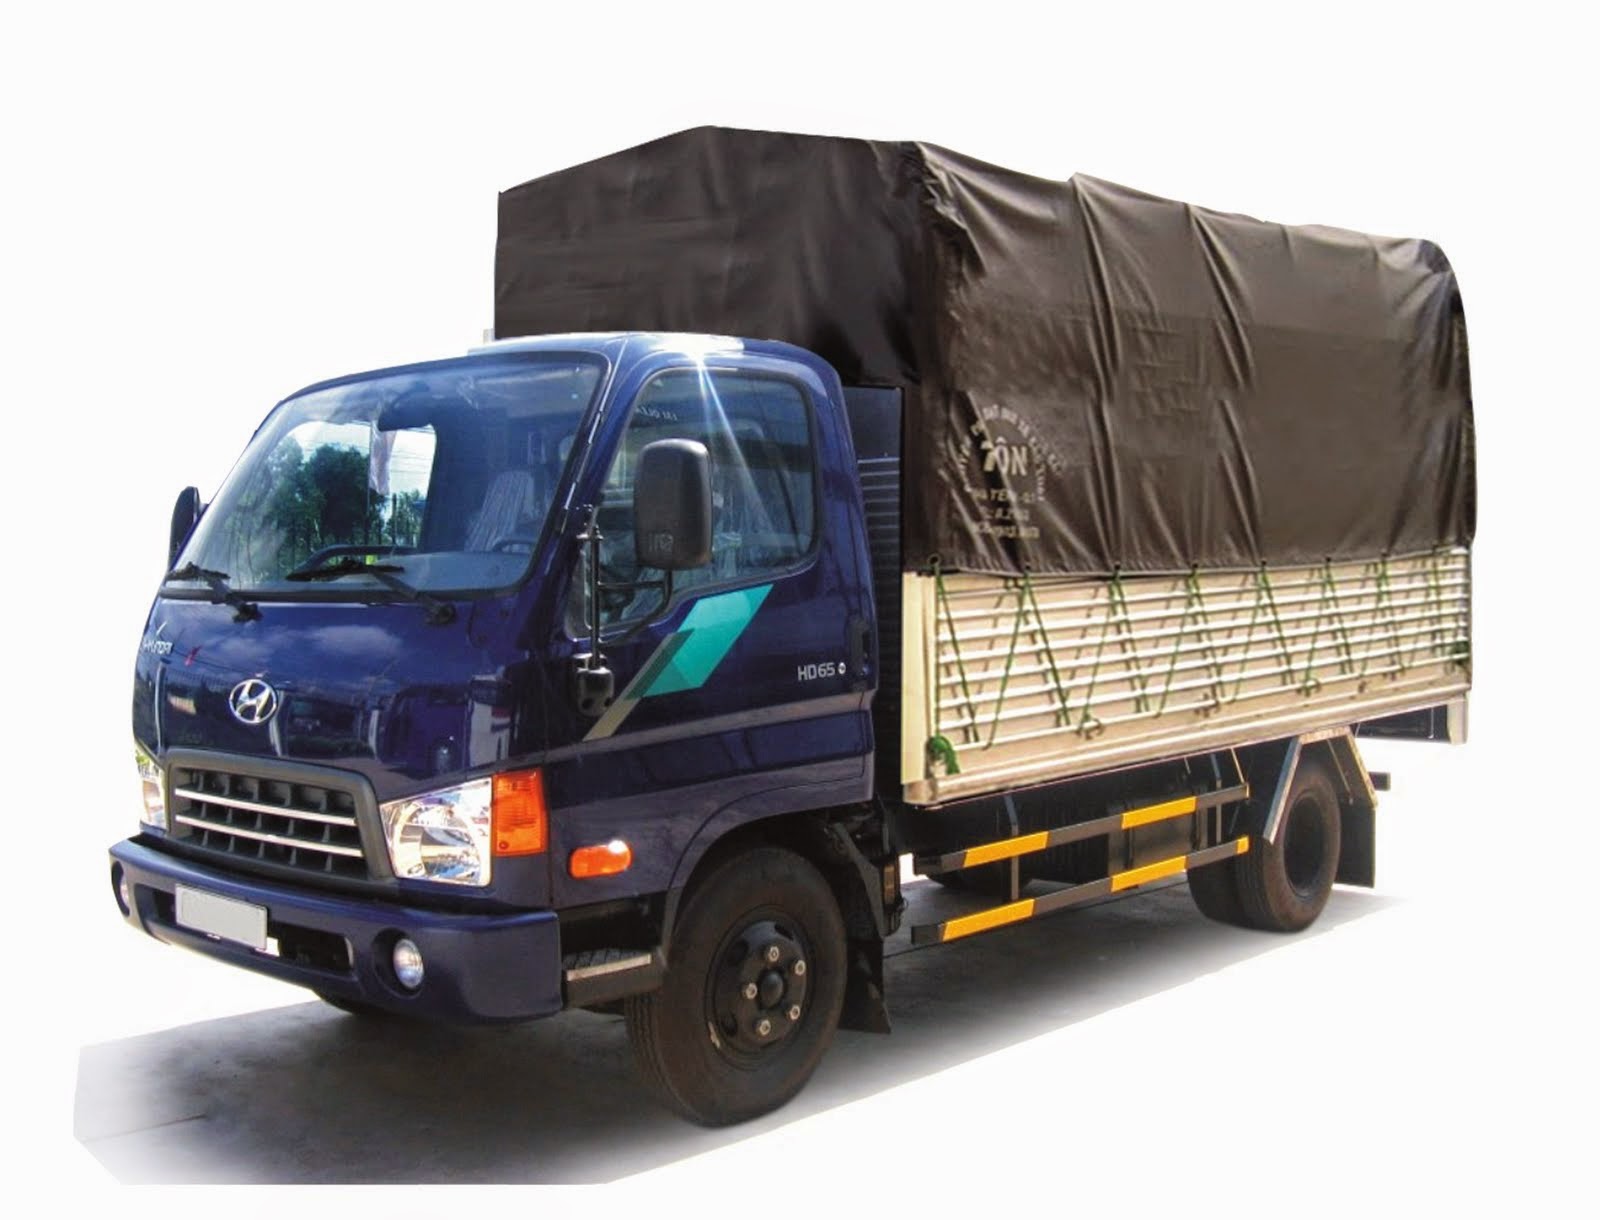 CHO THUÊ XE TẢI TỰ LÁI: Thuê xe tải 2,5 tấn